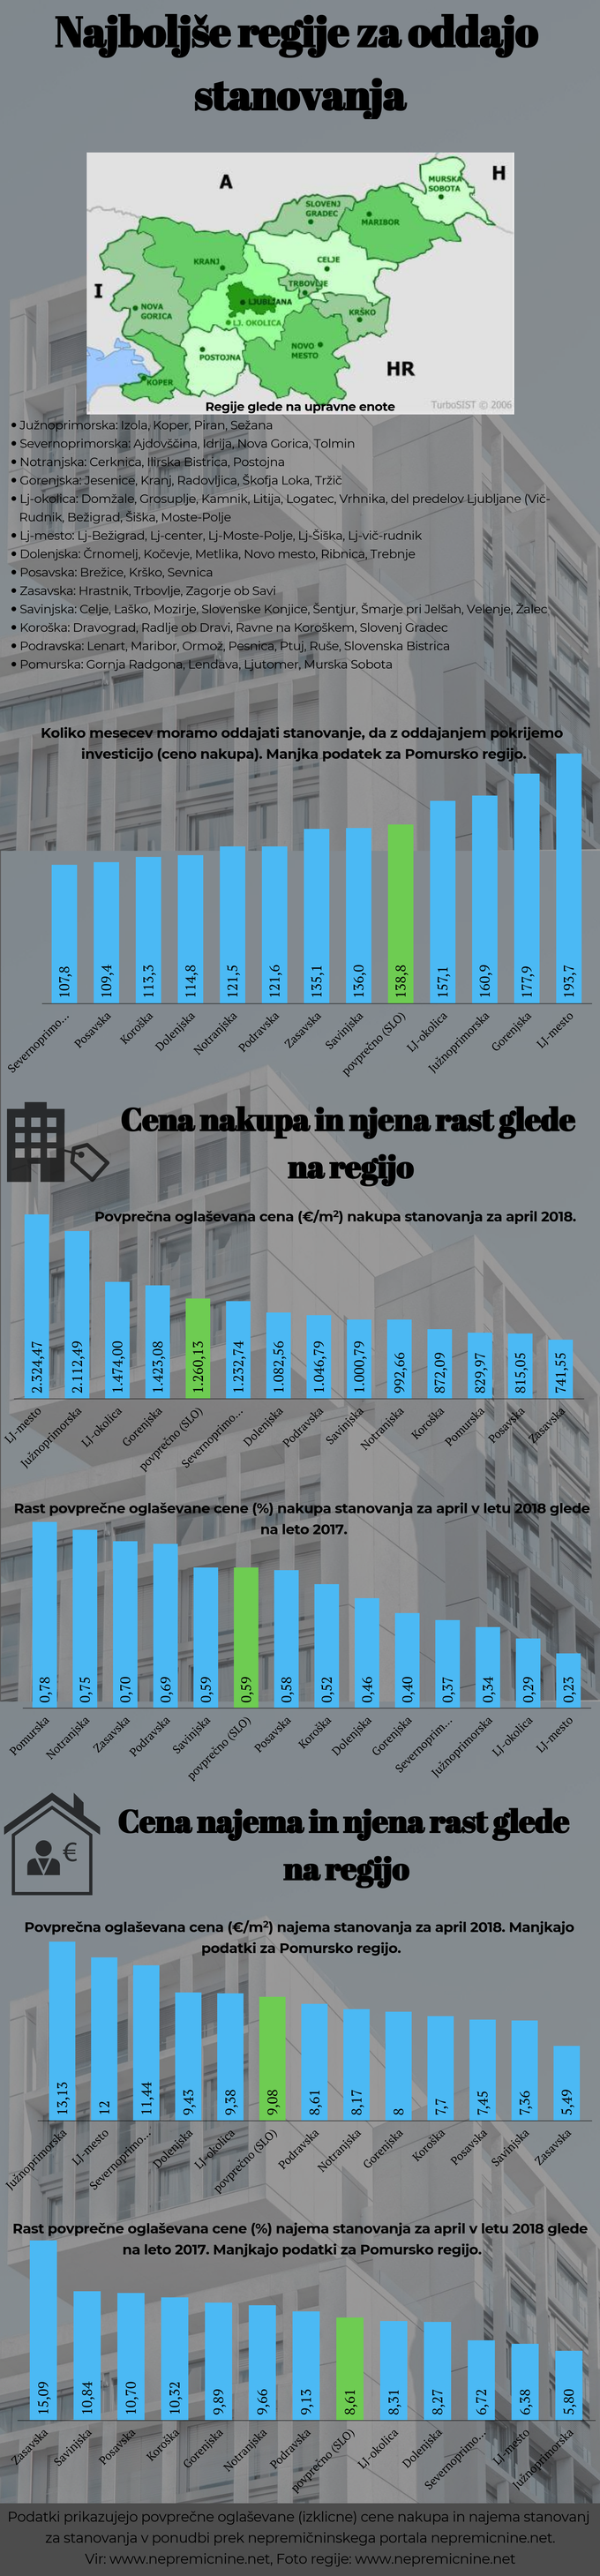 Kje v Sloveniji se najbolj splača investicija v oddajo stanovanja 1 | Foto: Infografika: Marjan Žlogar